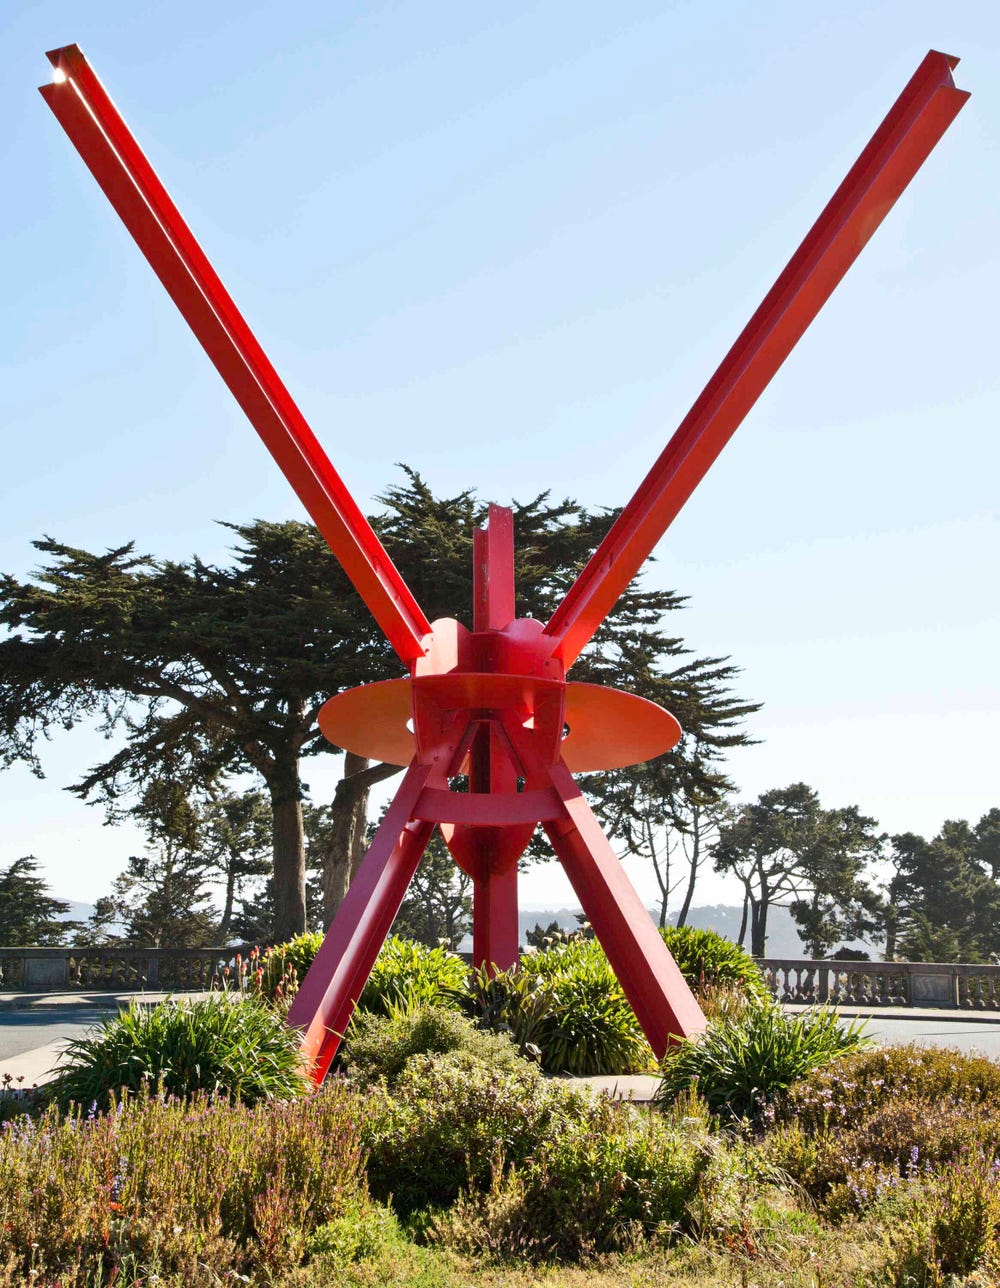 Sculpture by Mark di Suvero in the Legion of Honor sculpture garden